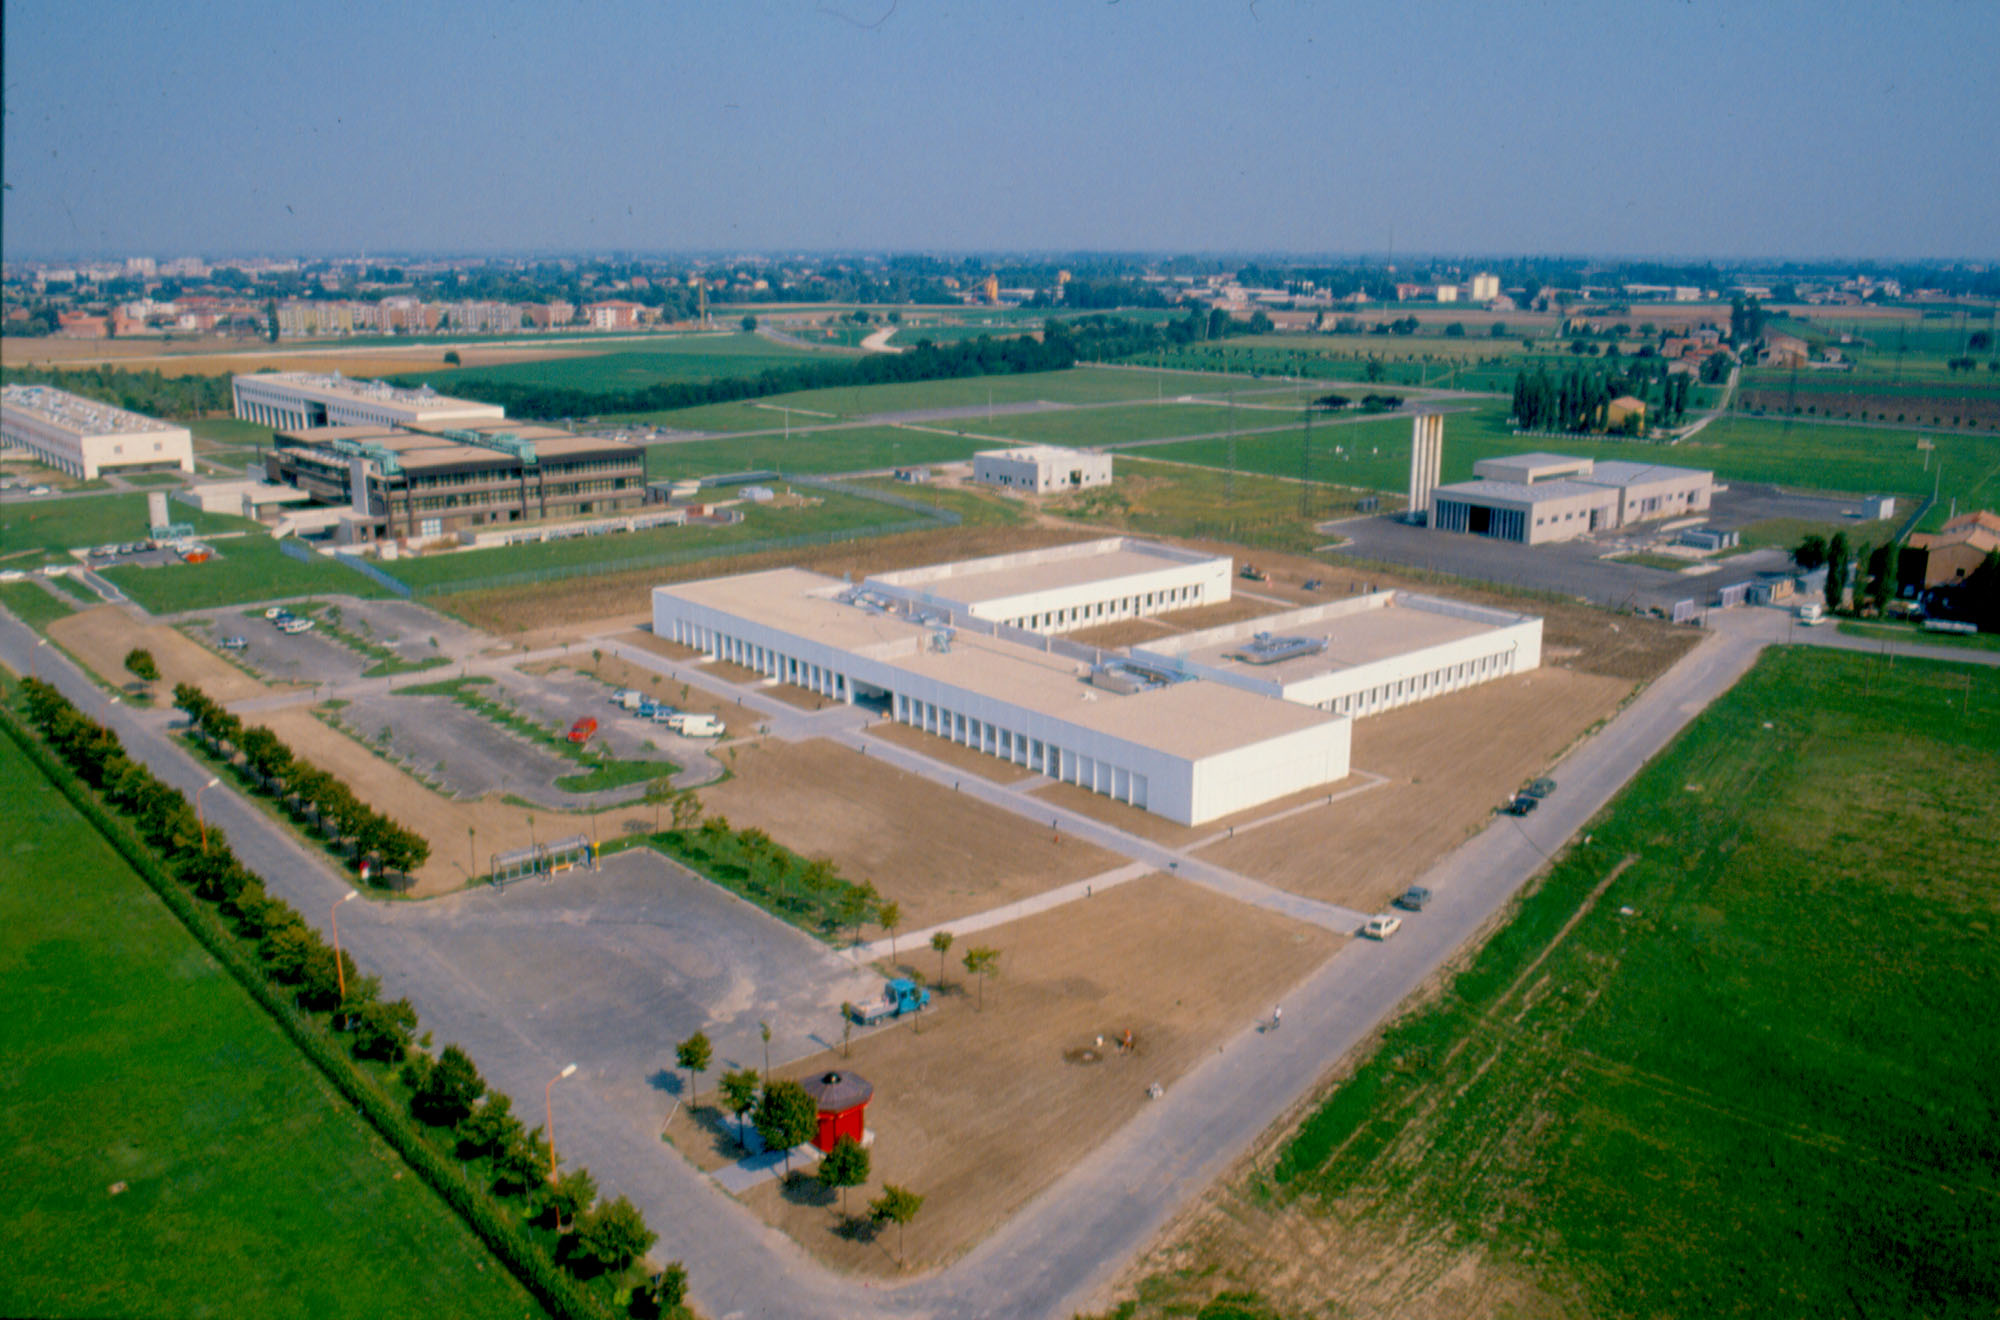 1987 - La sede didattica della Facoltà di Ingegneria donata da Barilla all'Università di Parma